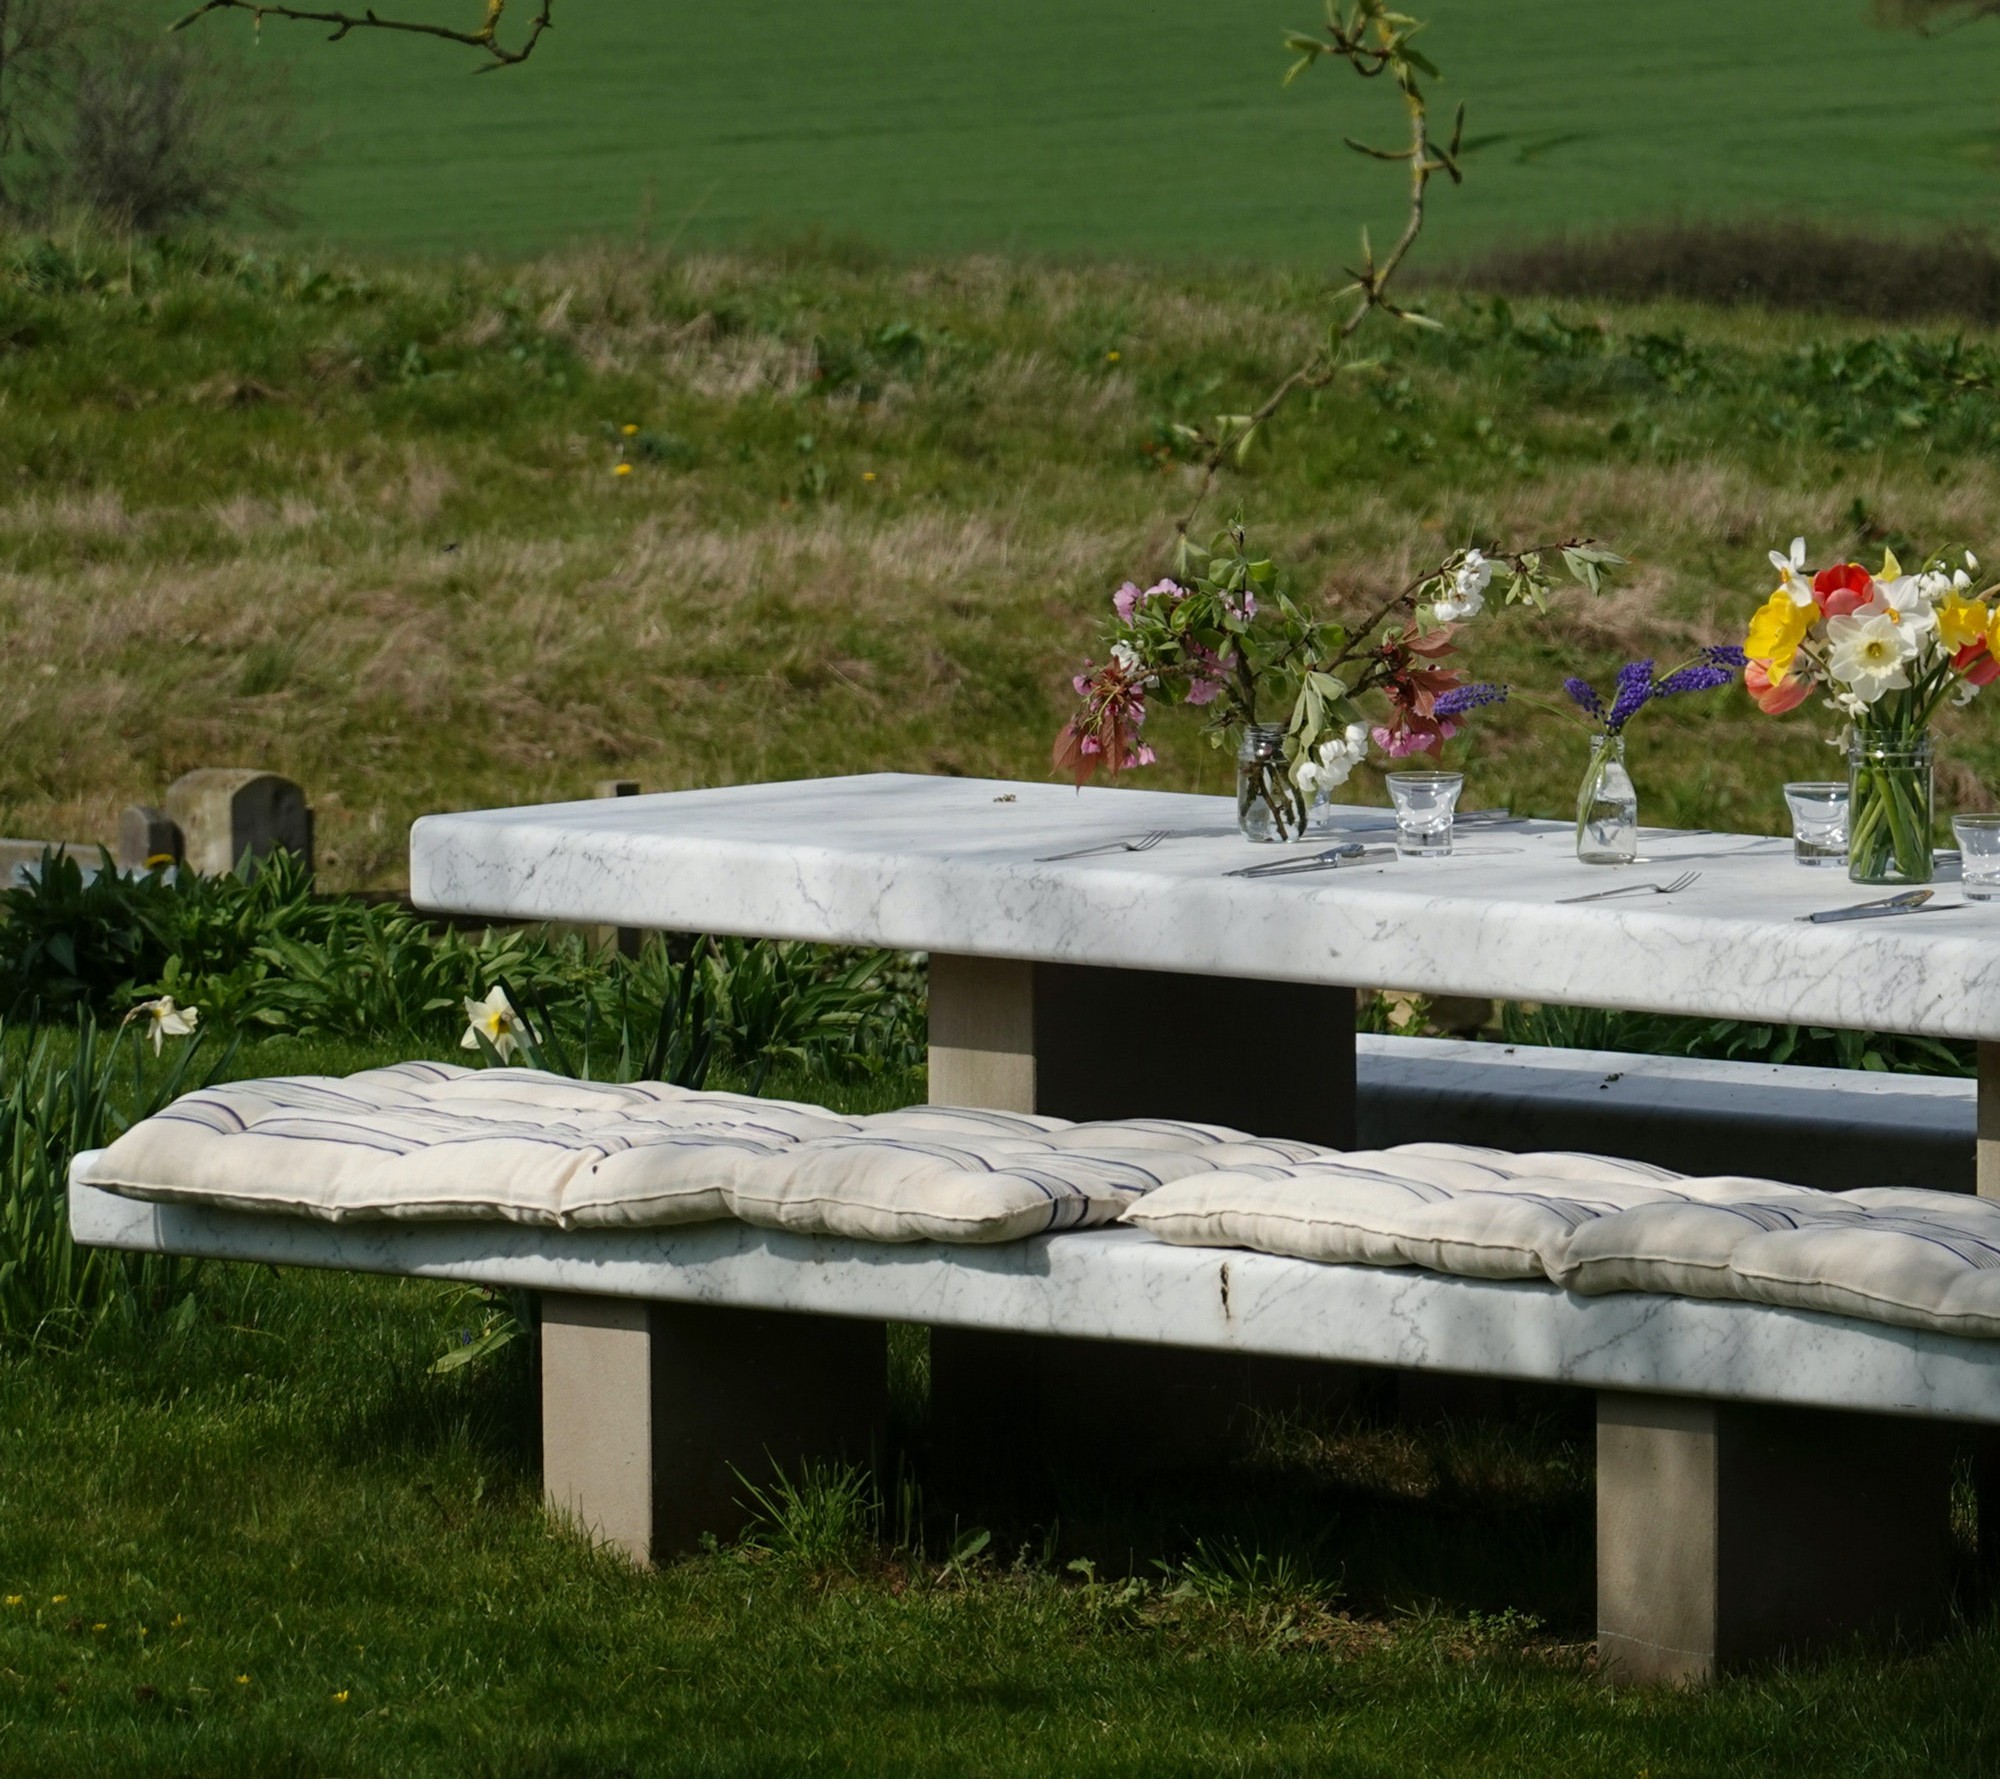 意大利Salvatori Boffi的‘Span’ Outdoor Dining table 户外桌子  细节图